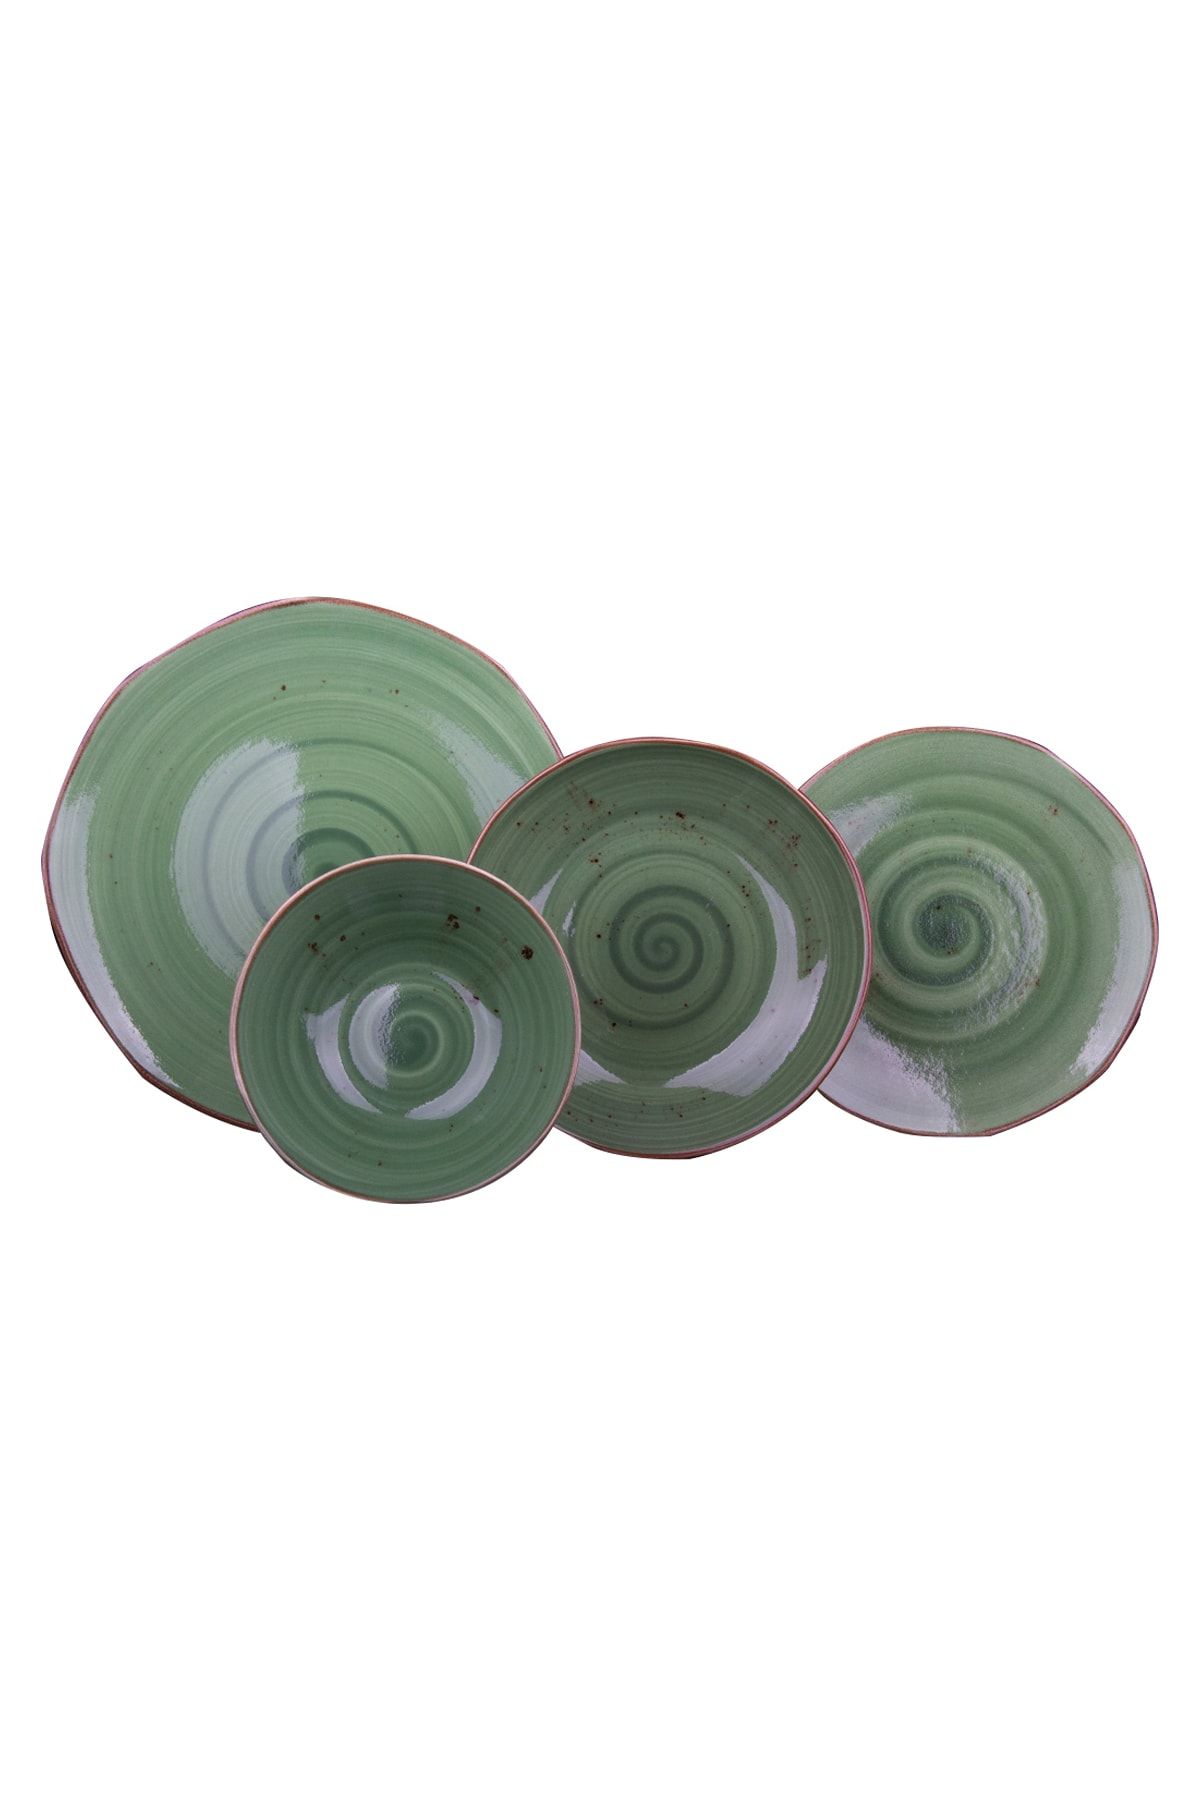 Tulü Porselen Ractive Organik Form Çağla Yeşili 24 Parça 6 Kişilik Yemek Takımı